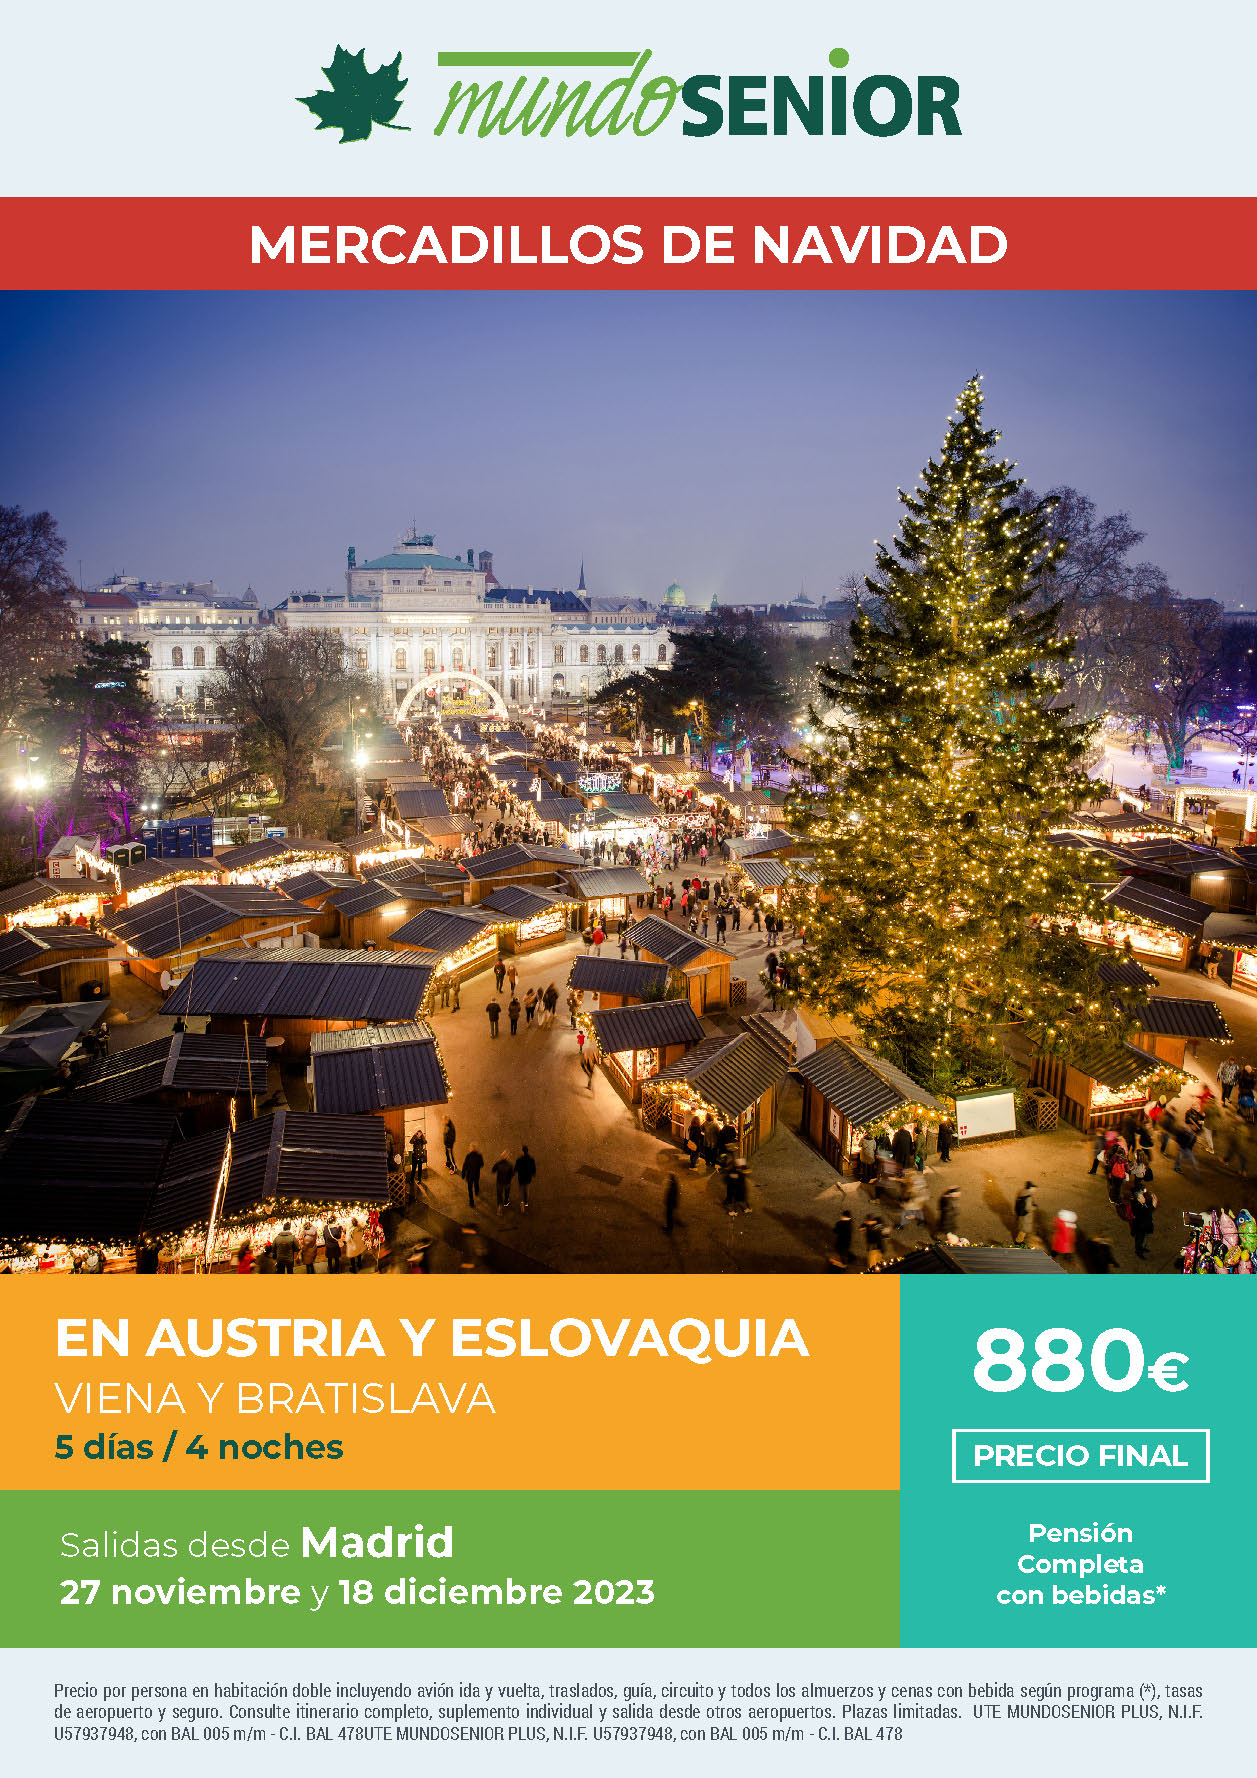 Oferta Mundo Senior Mercadillos de Navidad en Viena y Bratislava Pension Completa 5 dias salidas noviembre y diciembre 2023 desde Madrid